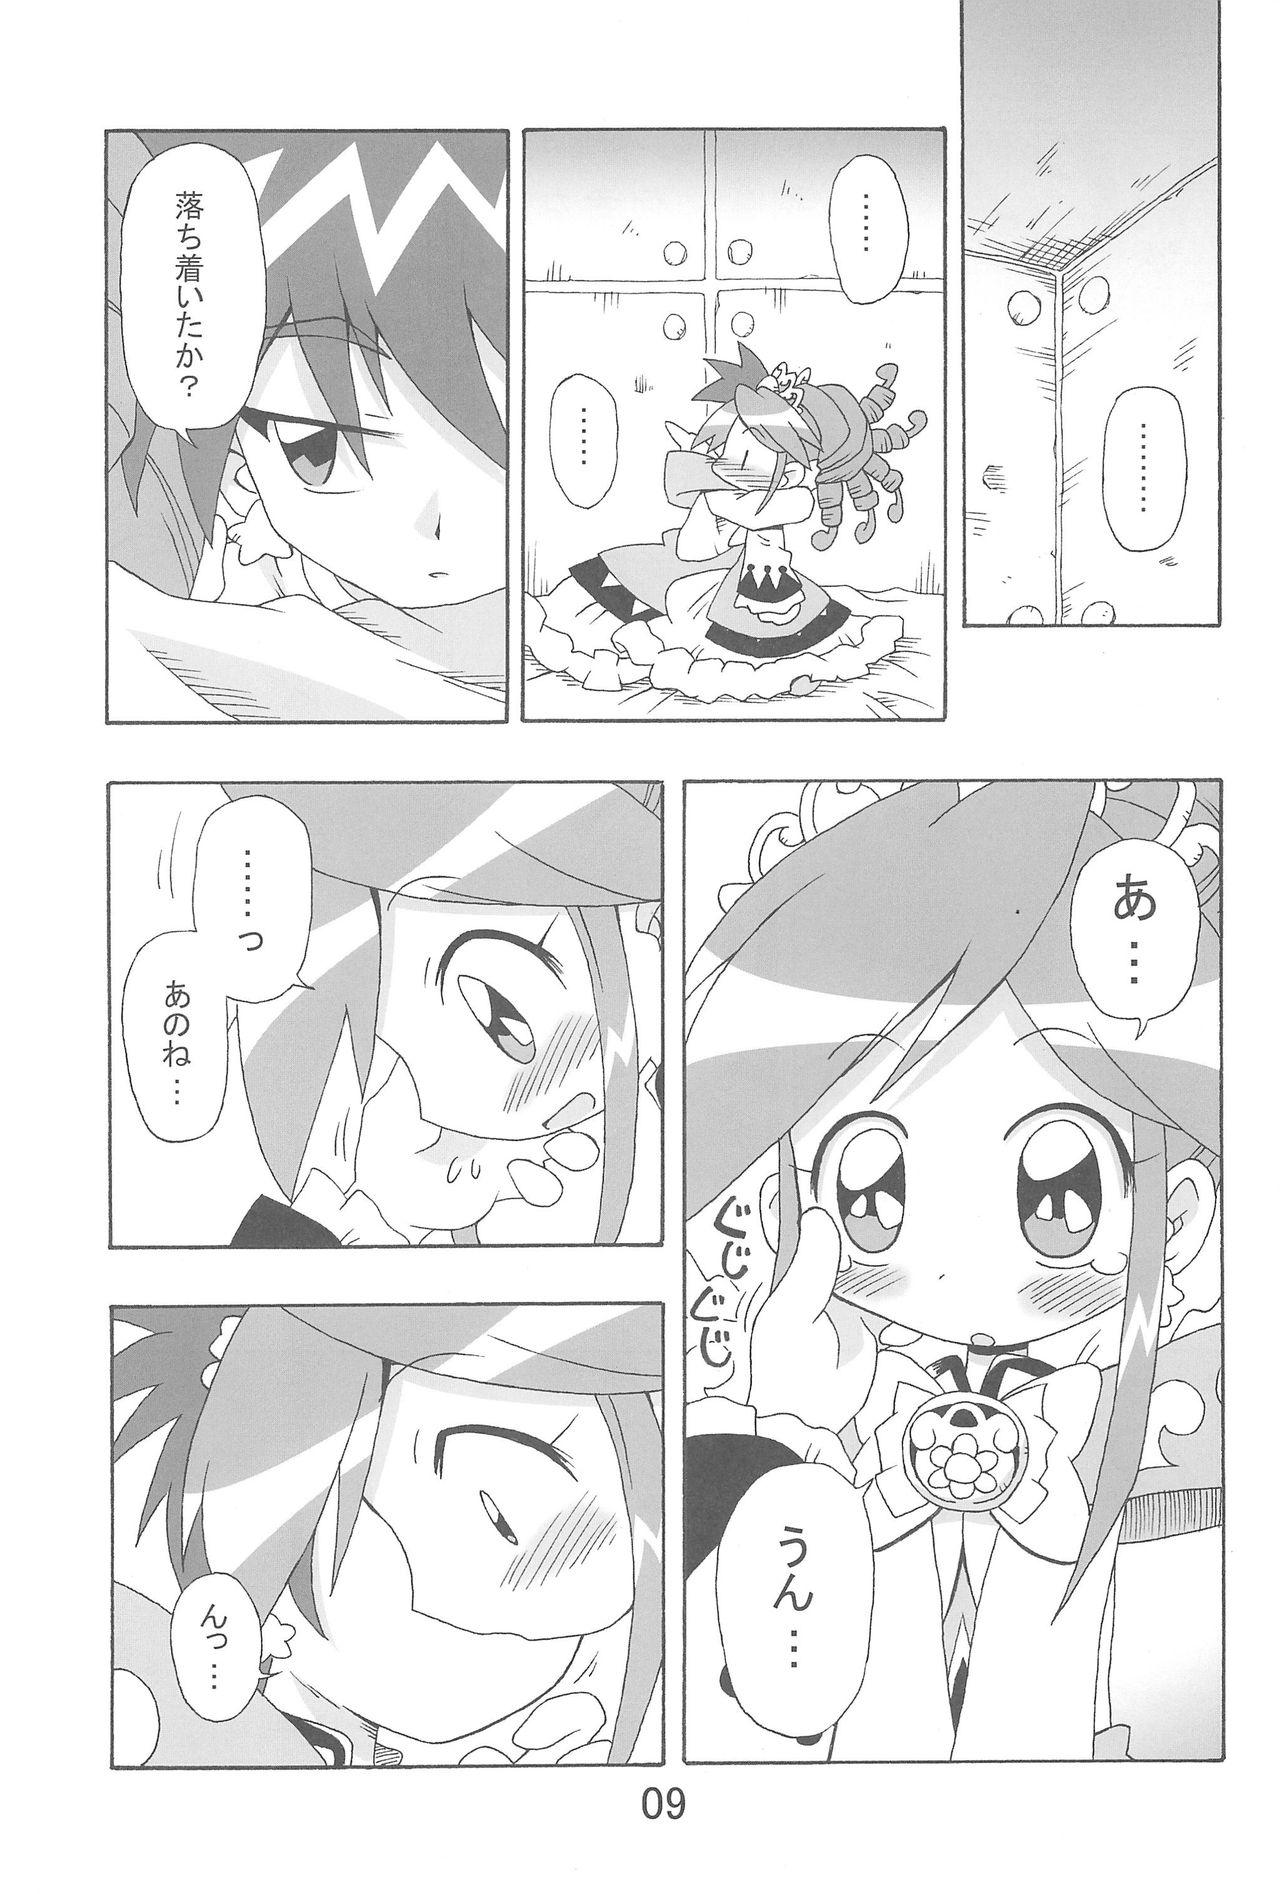 Hymen Ranran Rein Enen Eclipse - Fushigiboshi no futagohime Jocks - Page 9